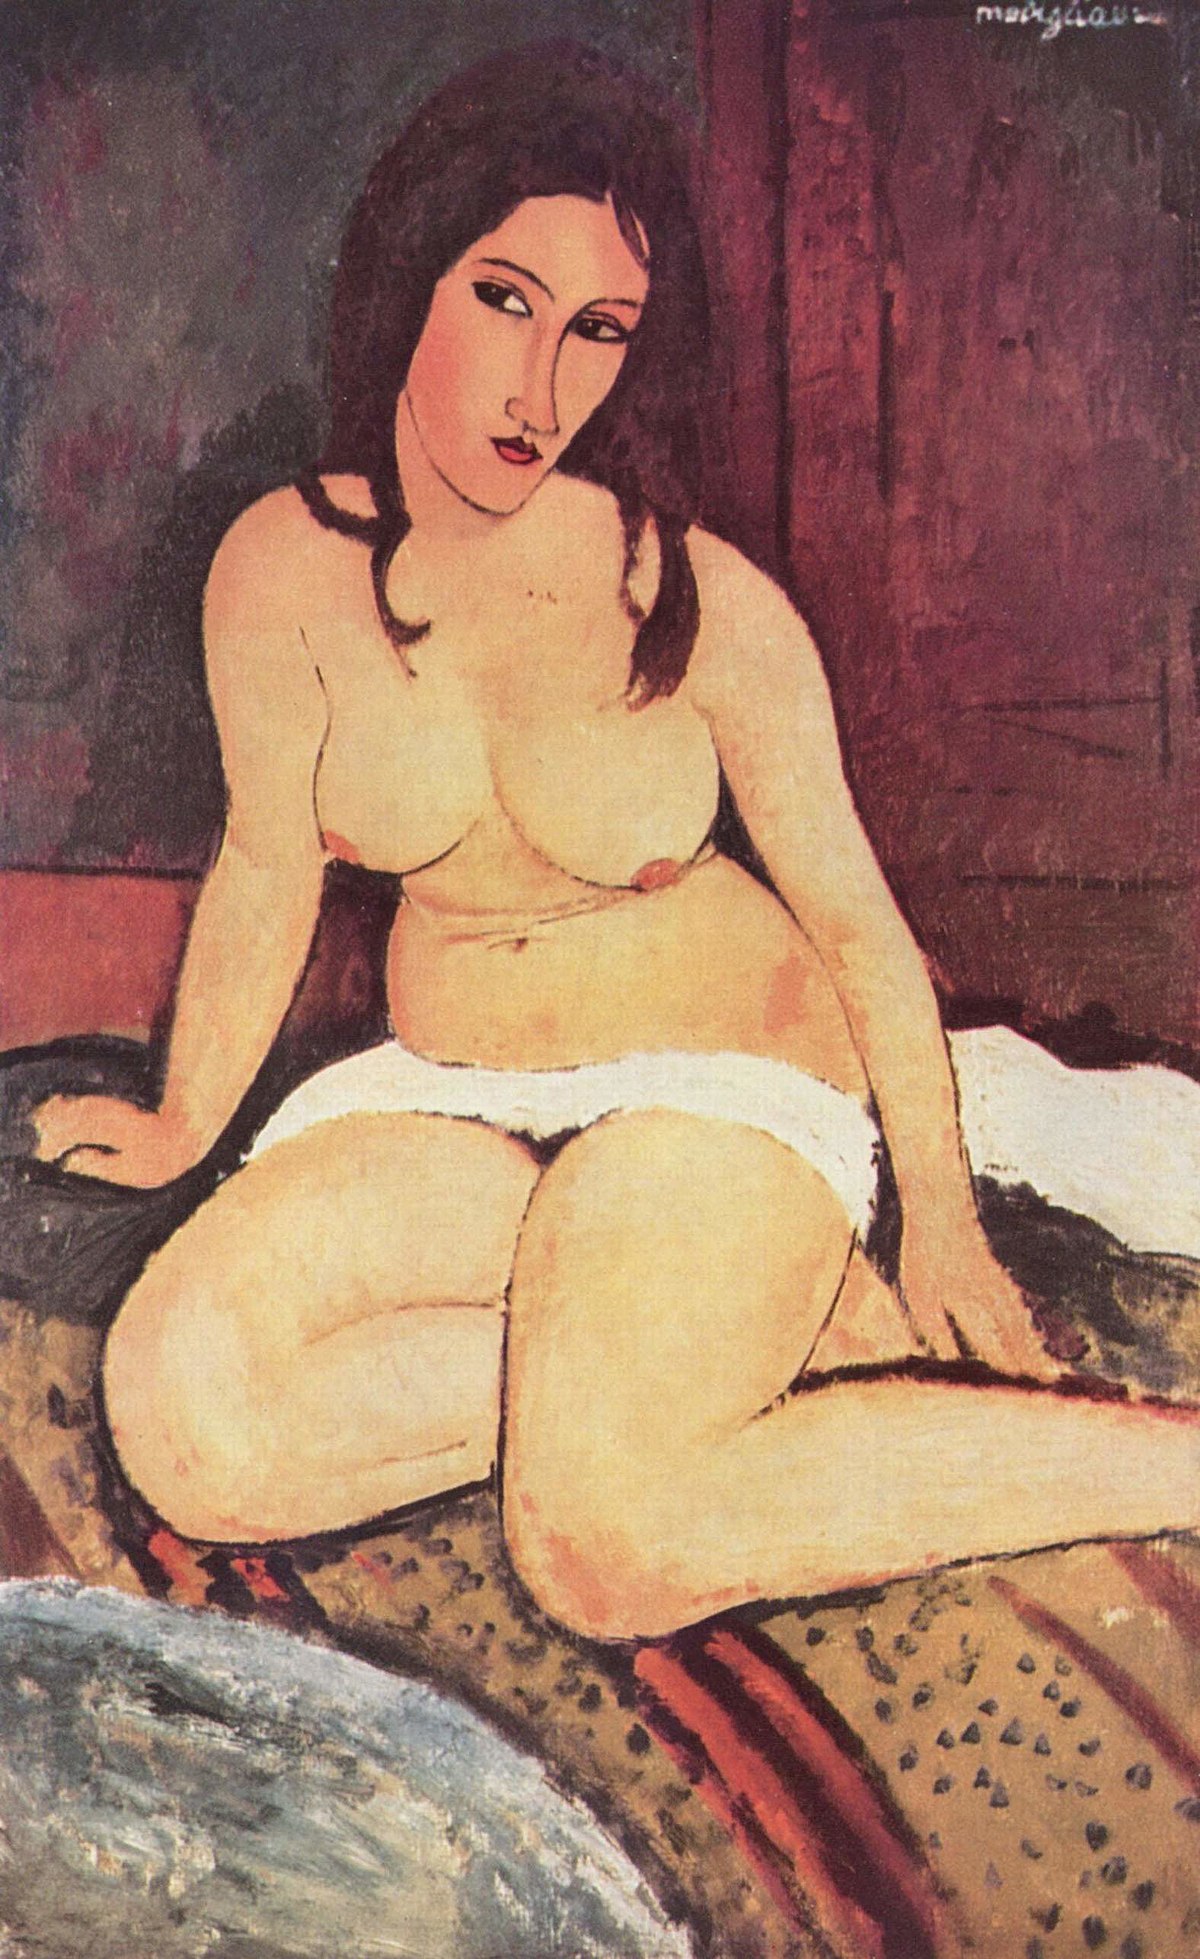 http://upload.wikimedia.org/wikipedia/commons/thumb/2/26/Amadeo_Modigliani_056.jpg/1200px-Amadeo_Modigliani_056.jpg